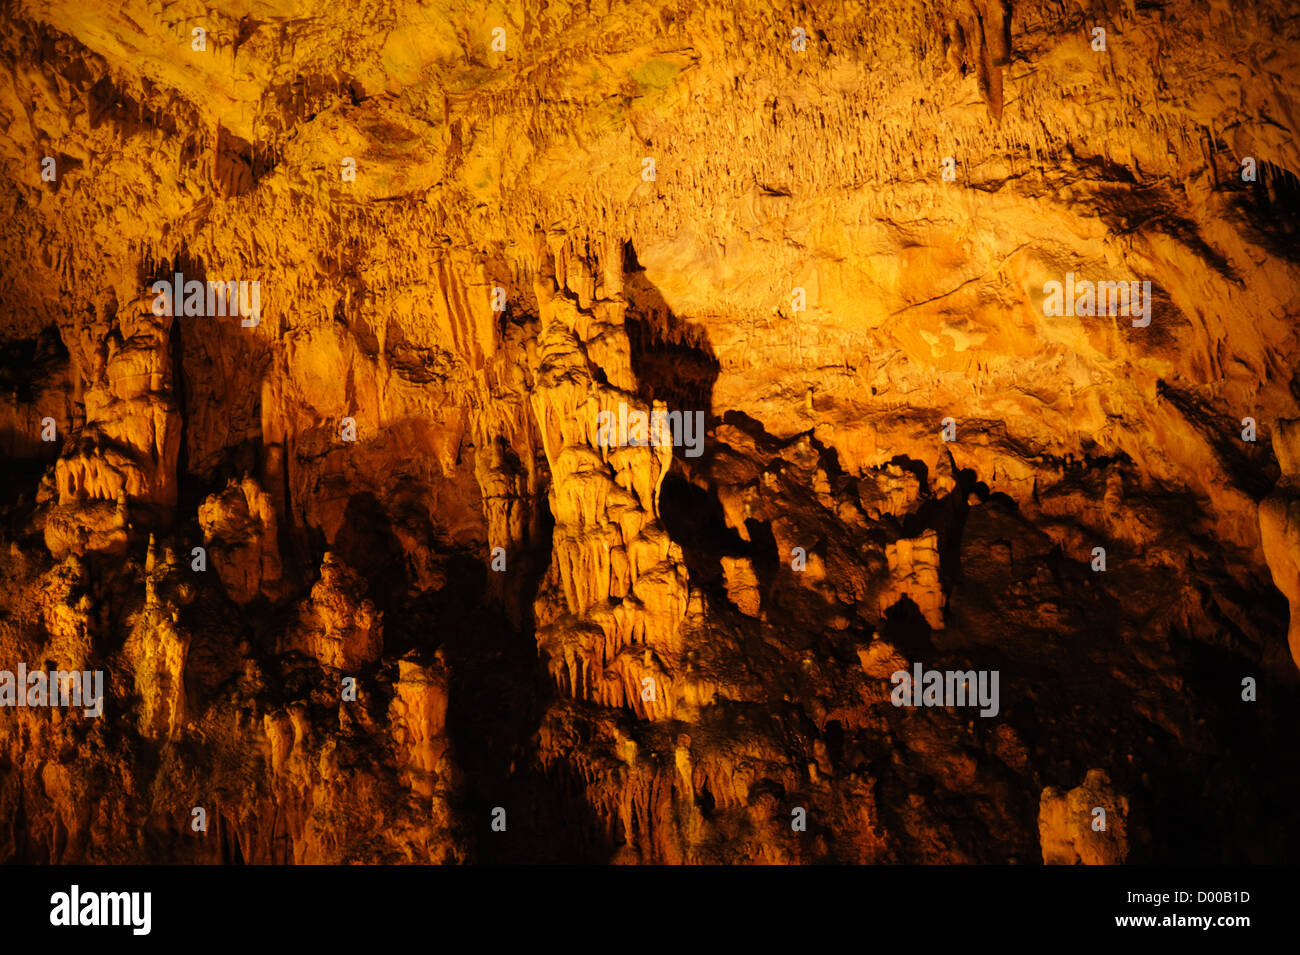 Biserujka cave, Krk island, stalactites,stalagmites, Croatia Stock Photo